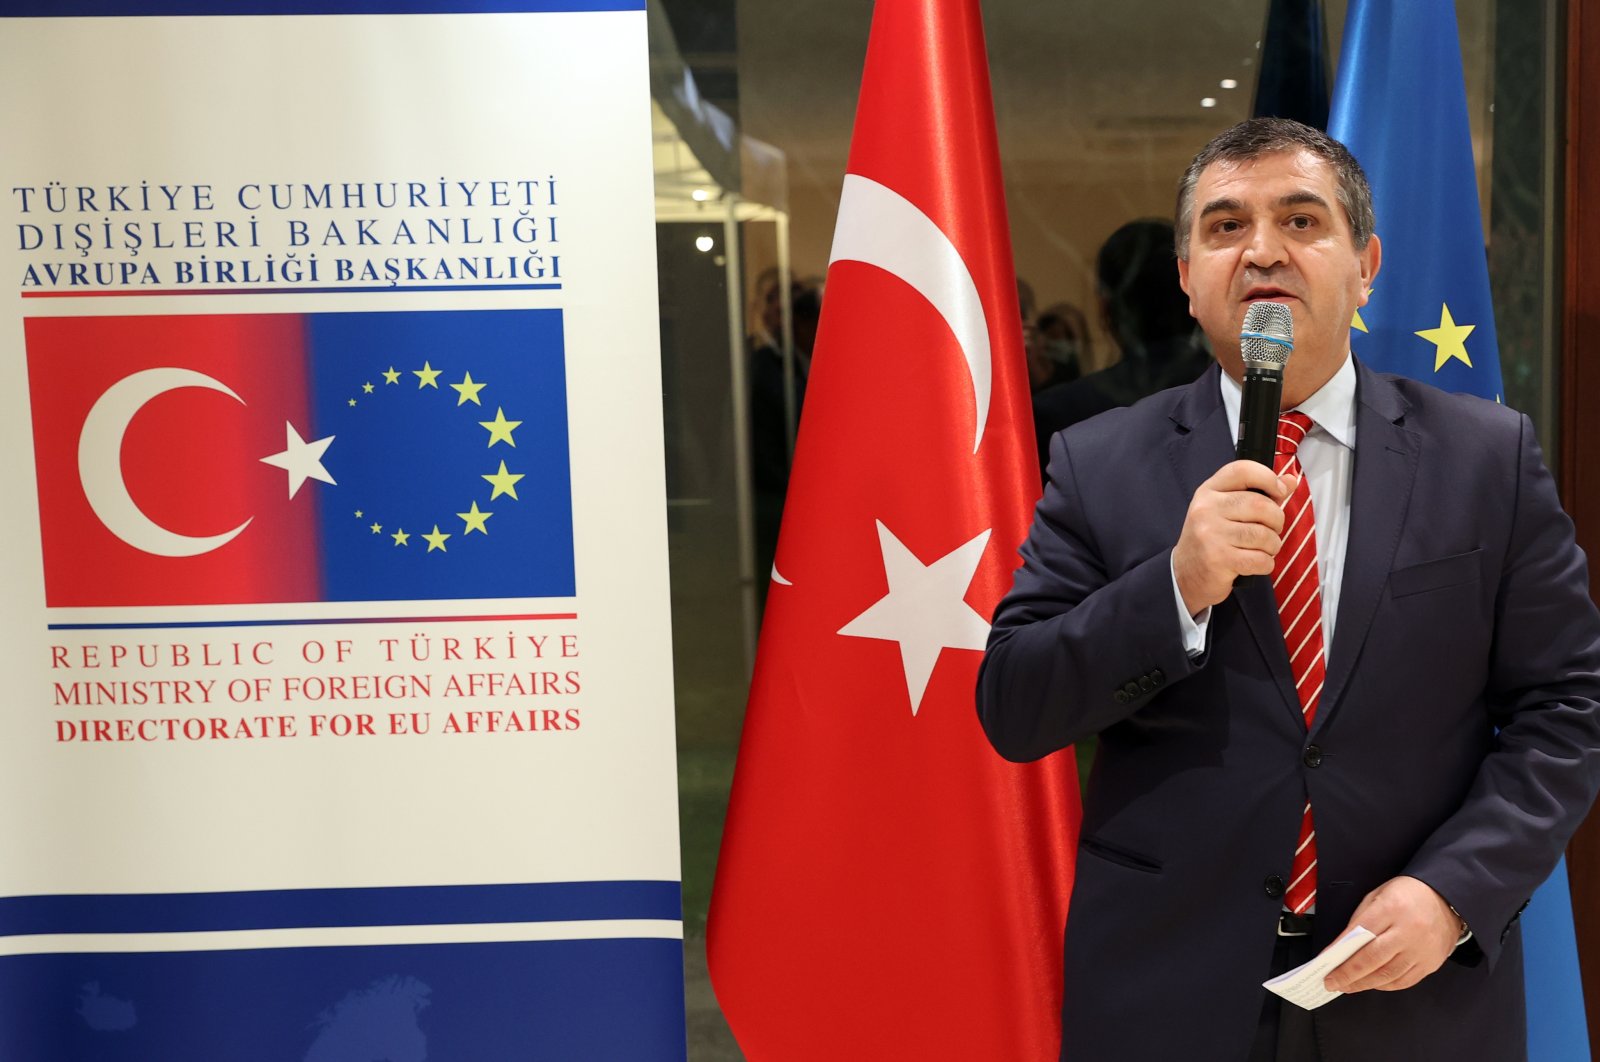 Spolupráce mezi Tureckem a EU se během českého předsednictví prohloubí: místopředseda FM